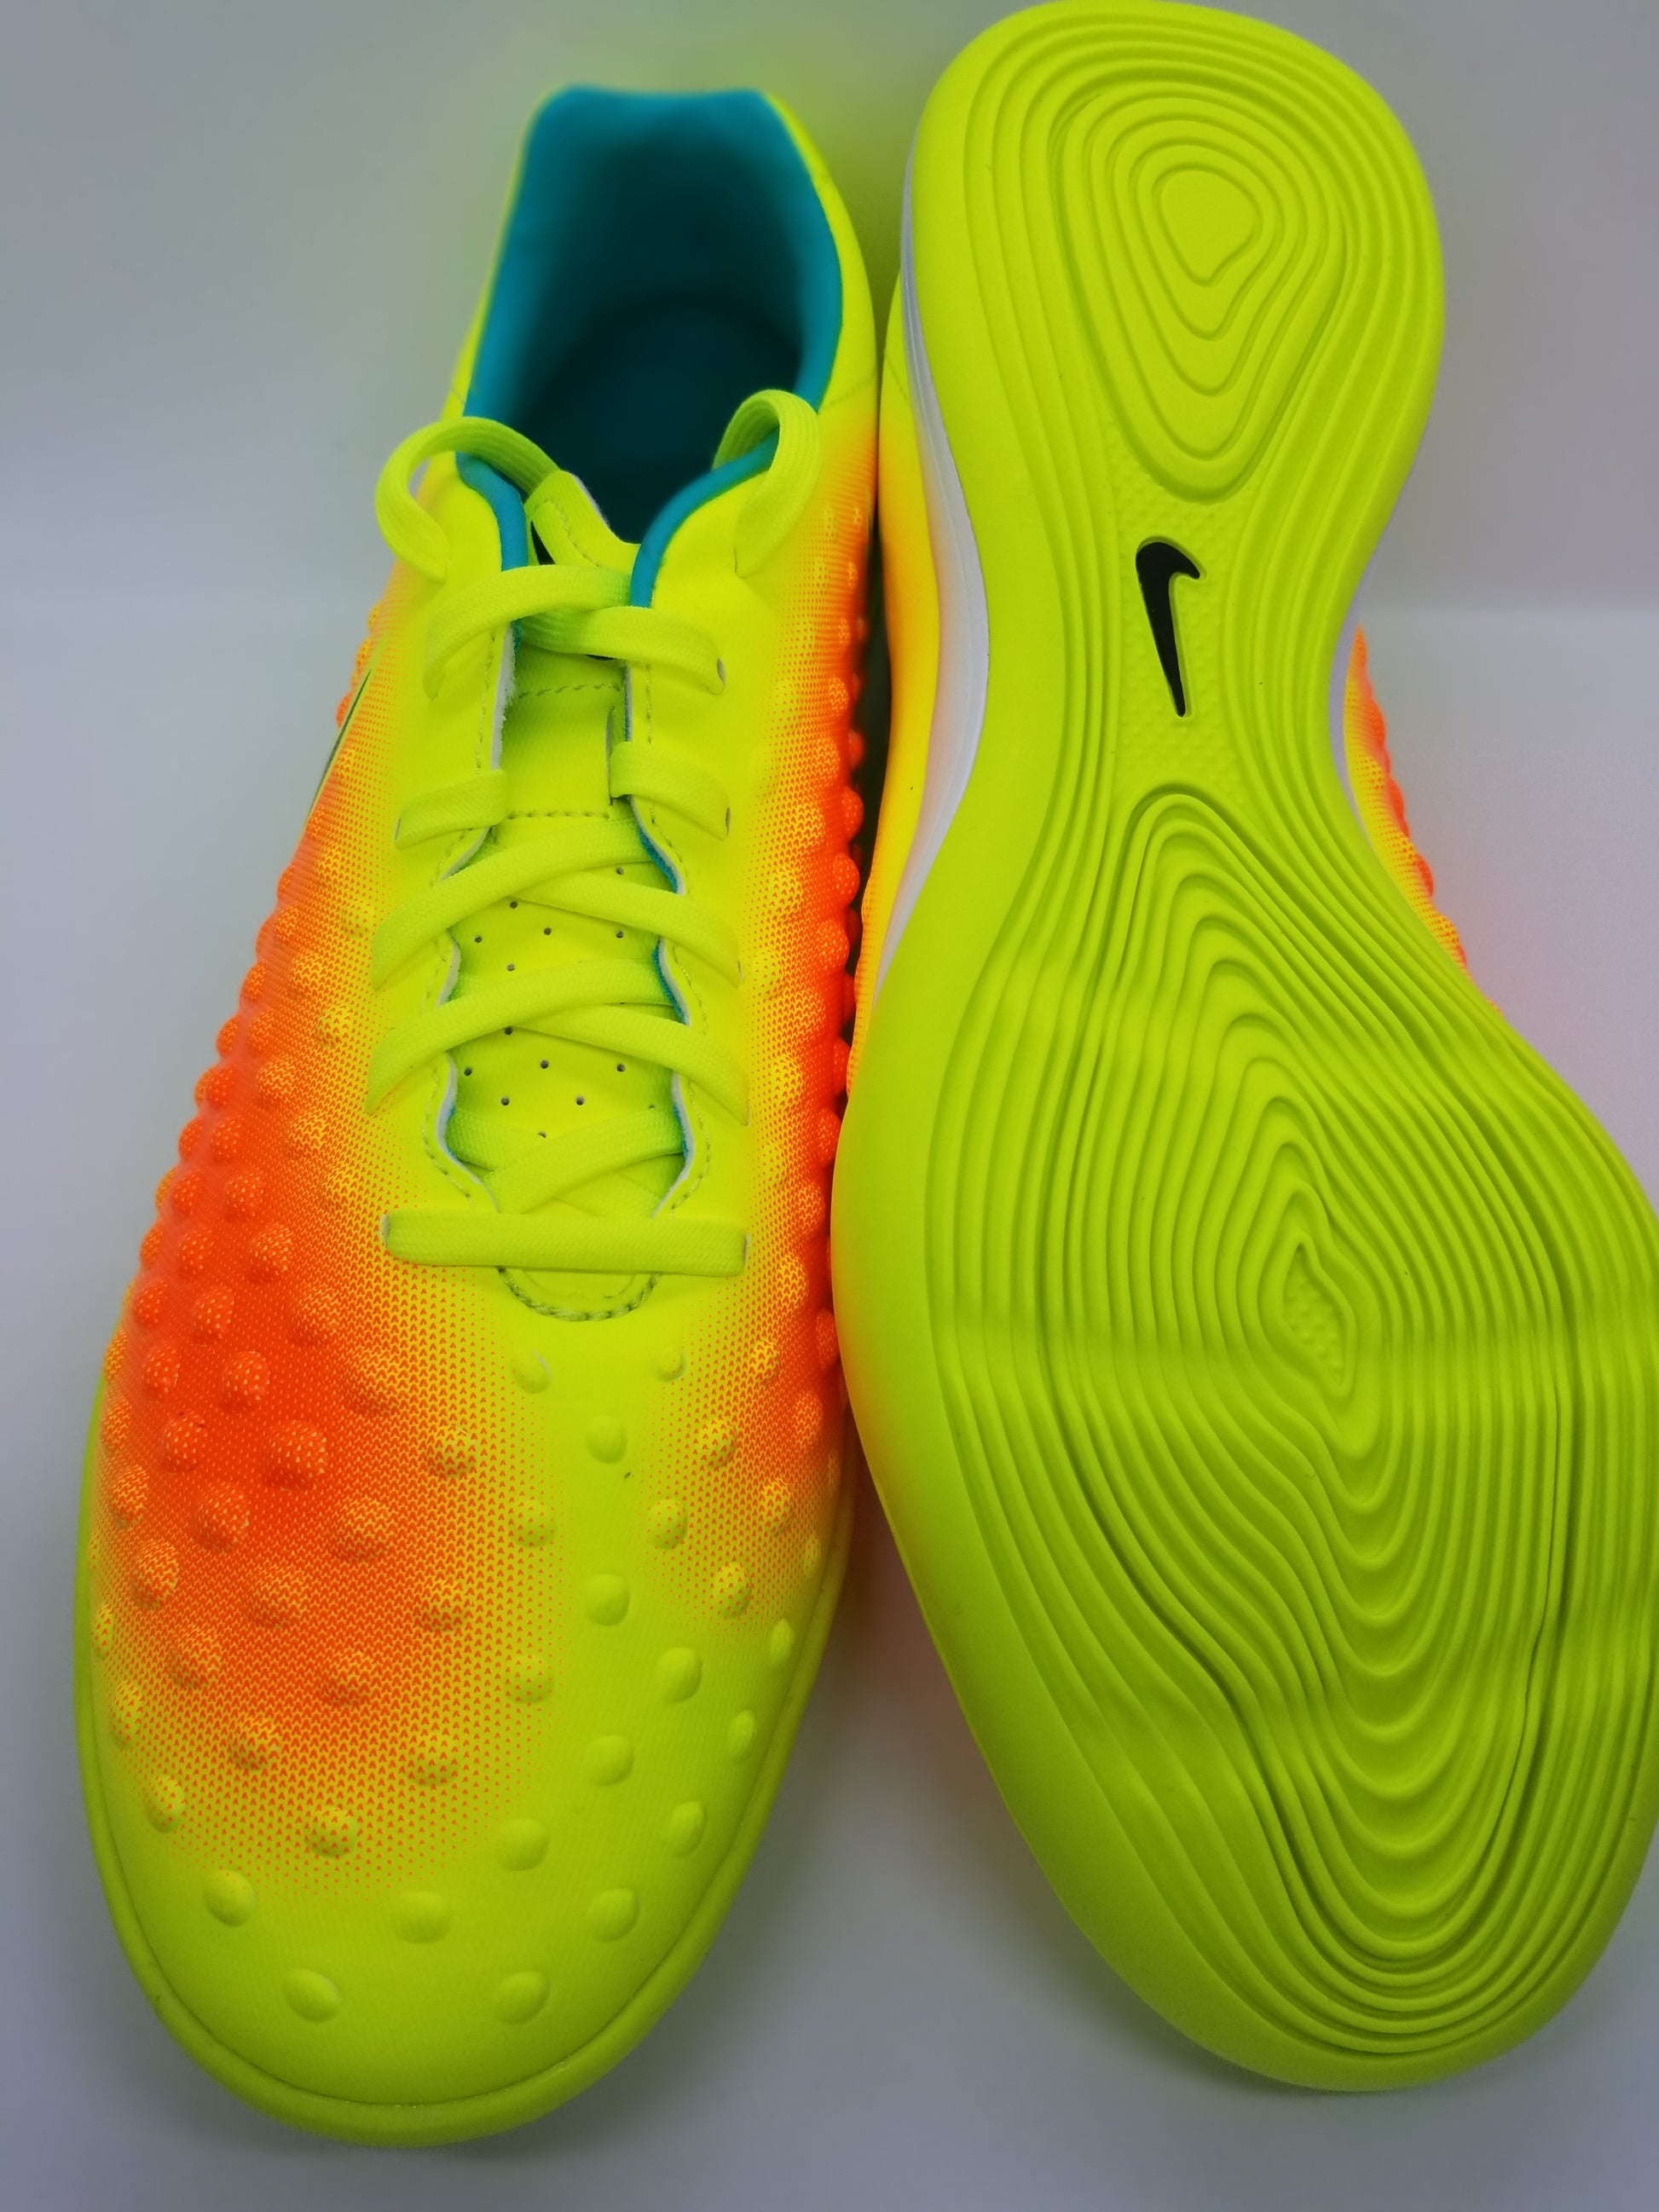 Nike Onda II – Boots